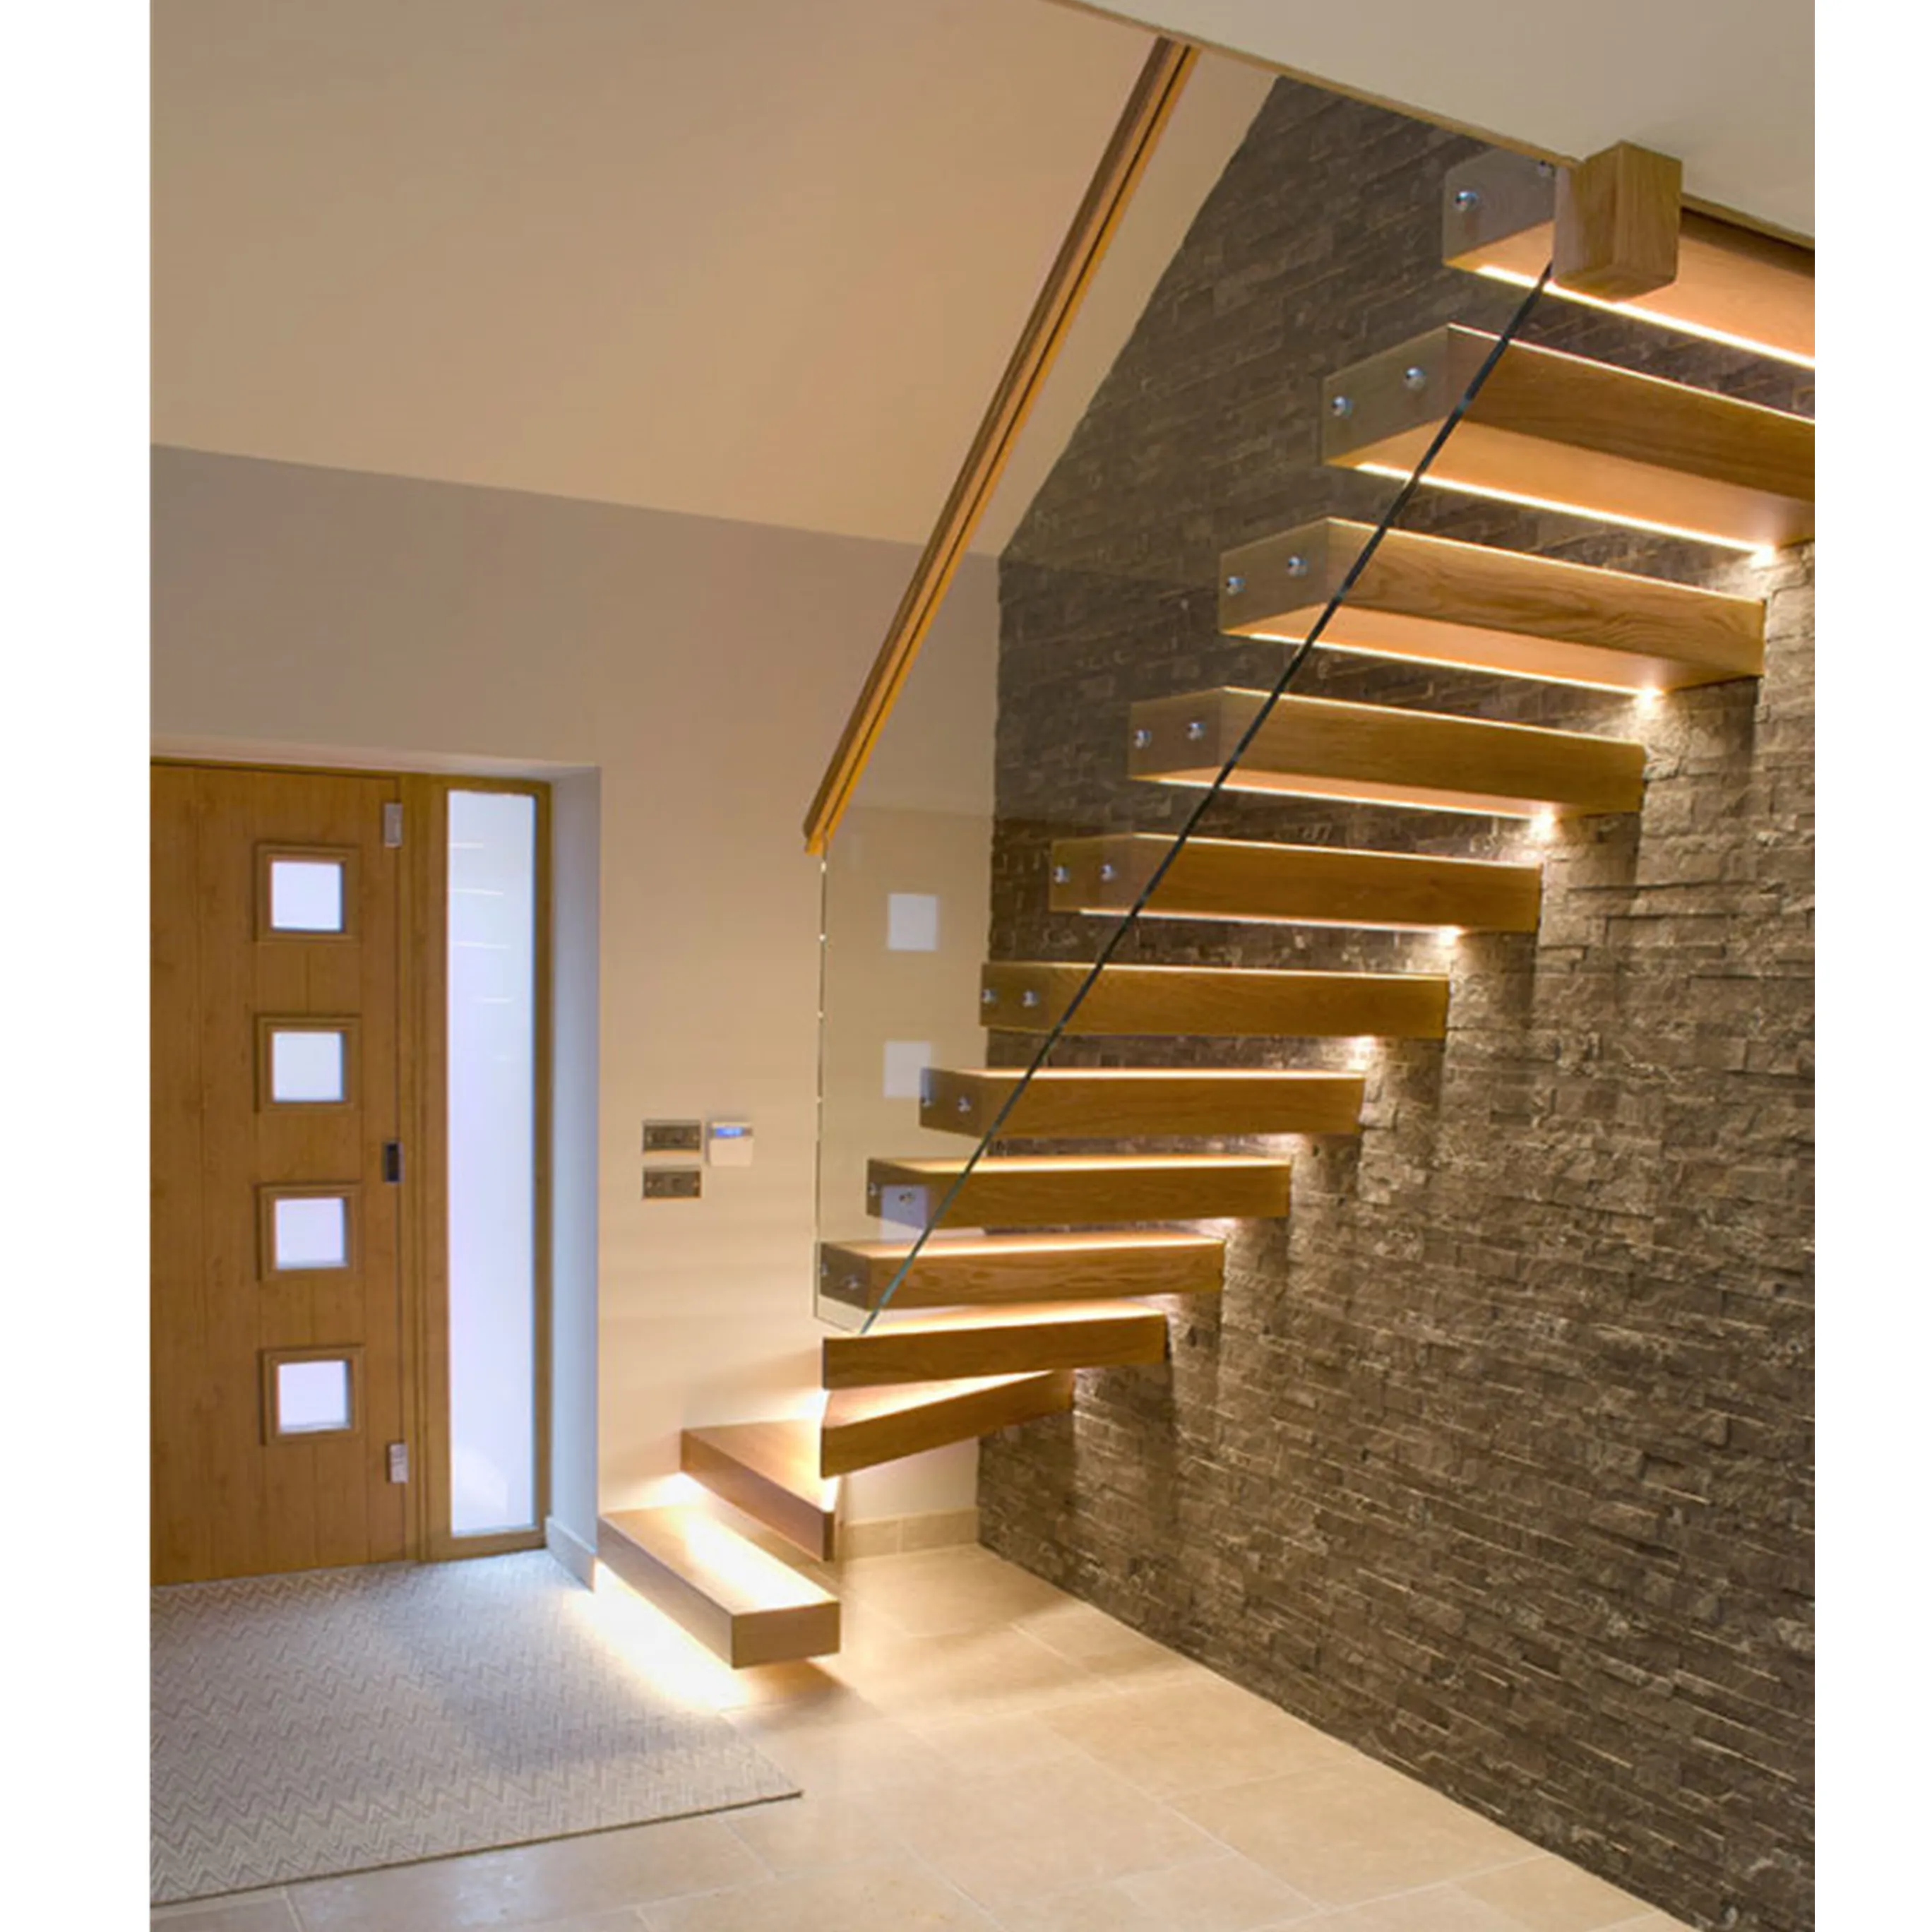 Escada padrão australiano/canadano, escada moderna para interior com andares de madeira